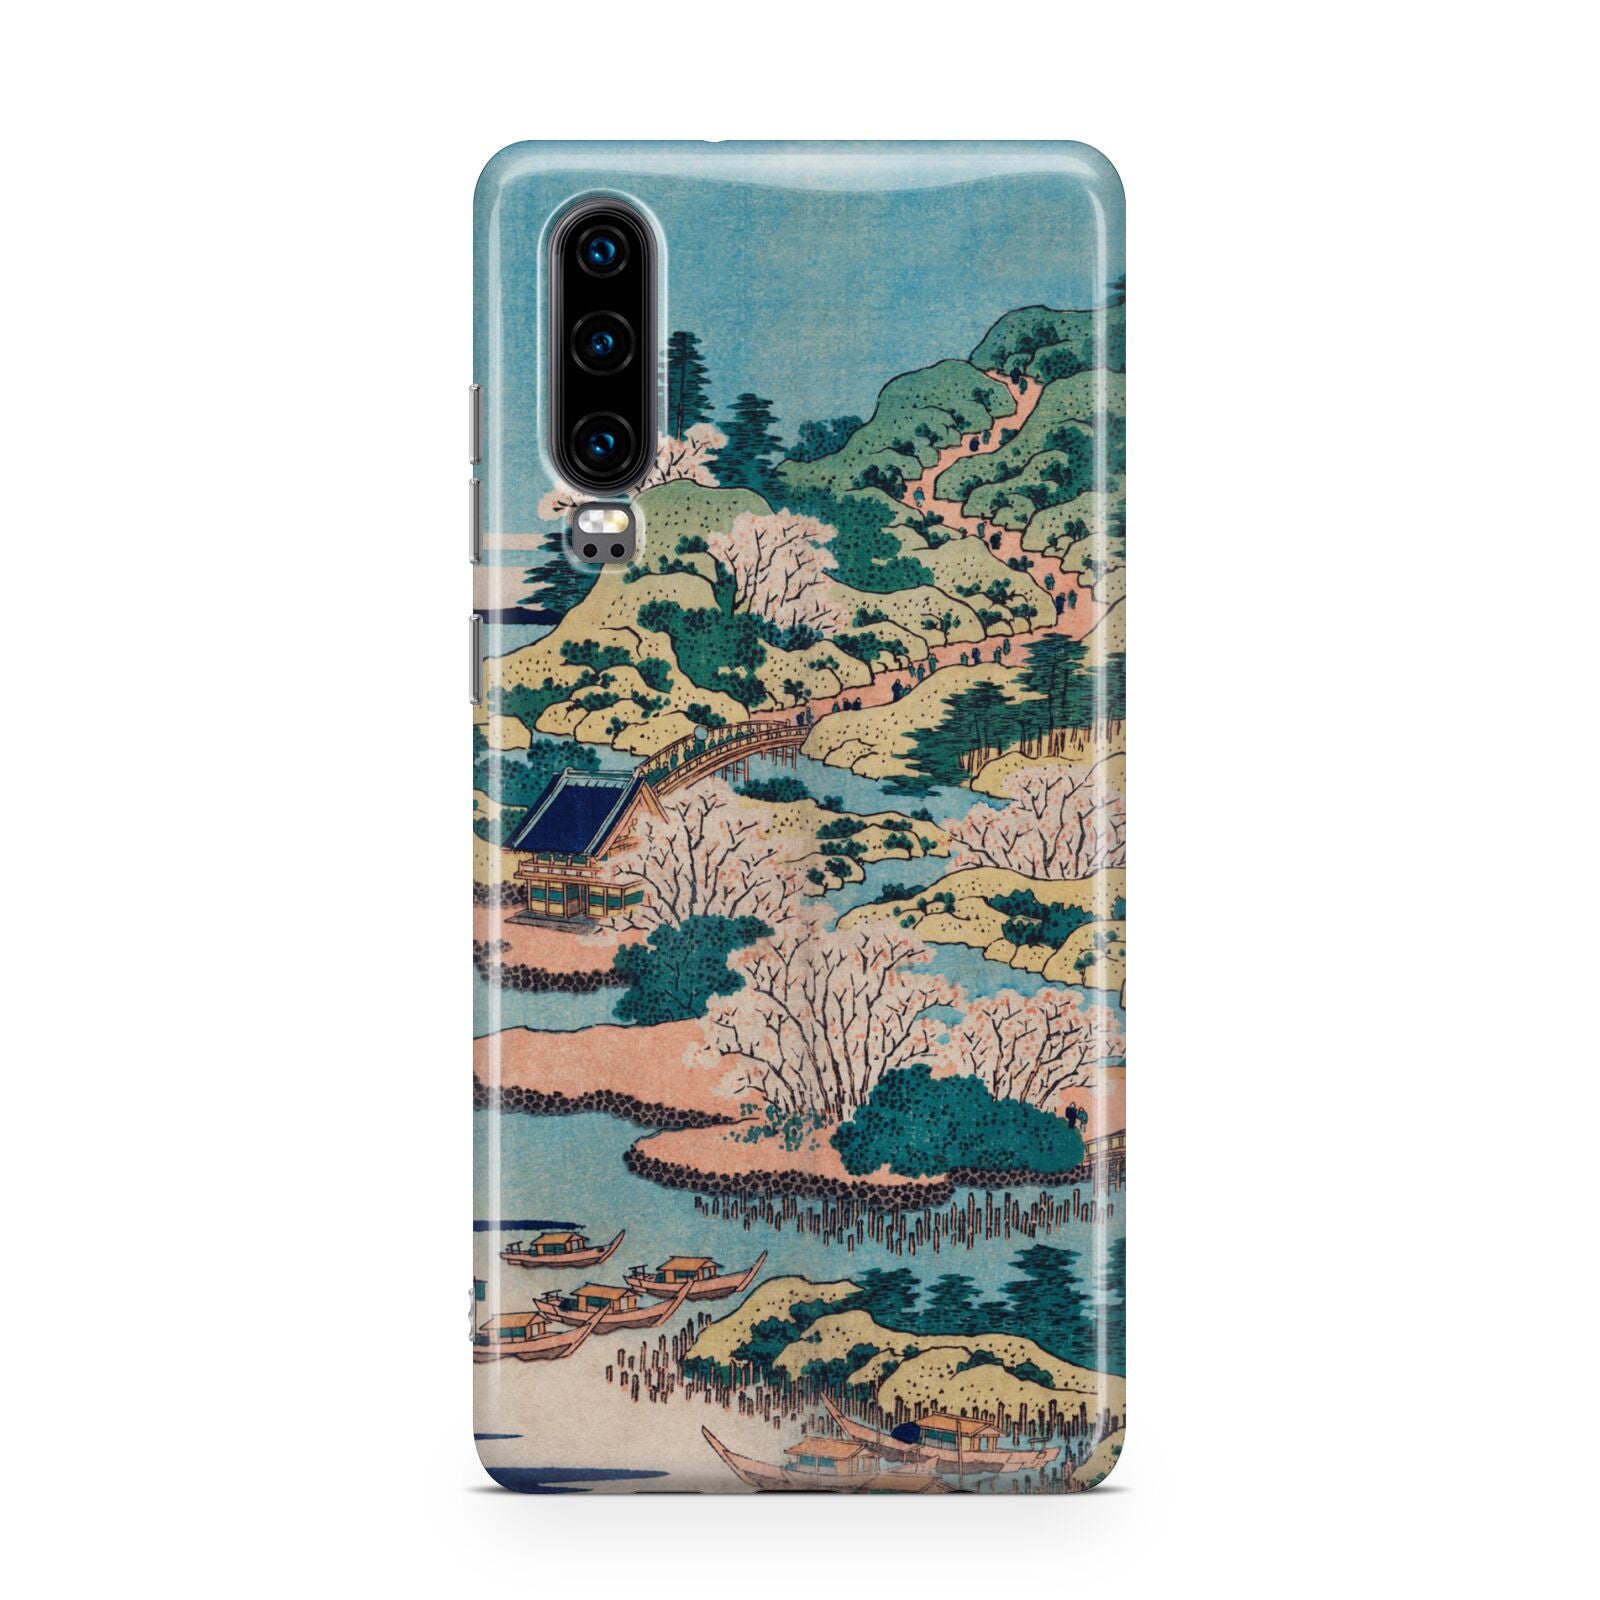 Coastal Community By Katsushika Hokusai Huawei P30 Phone Case